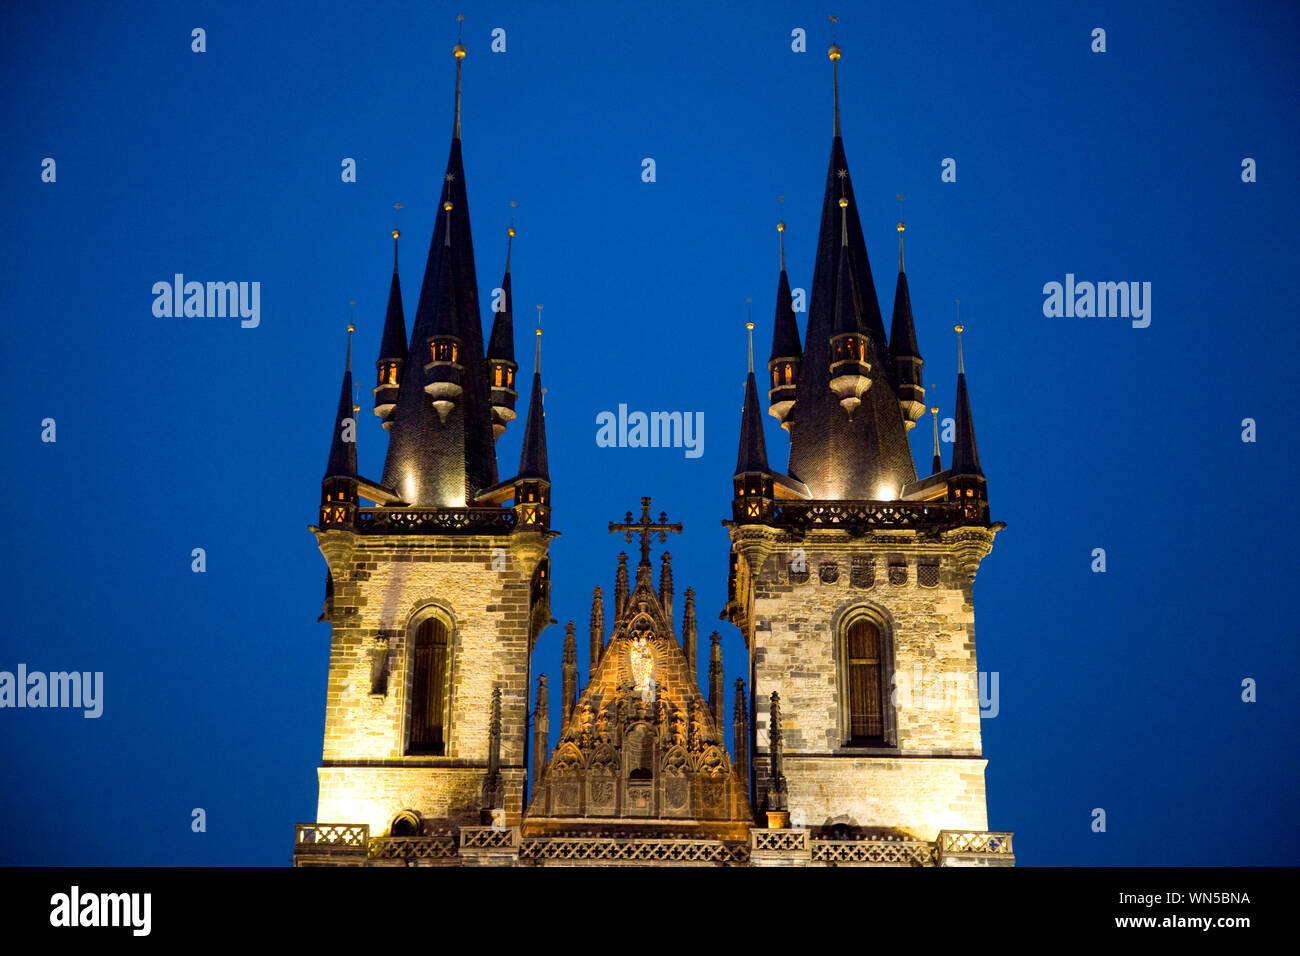 Die Türme der Tyn Kirche bei Nacht. In Prag in der Tschechischen Republik. Stockfoto